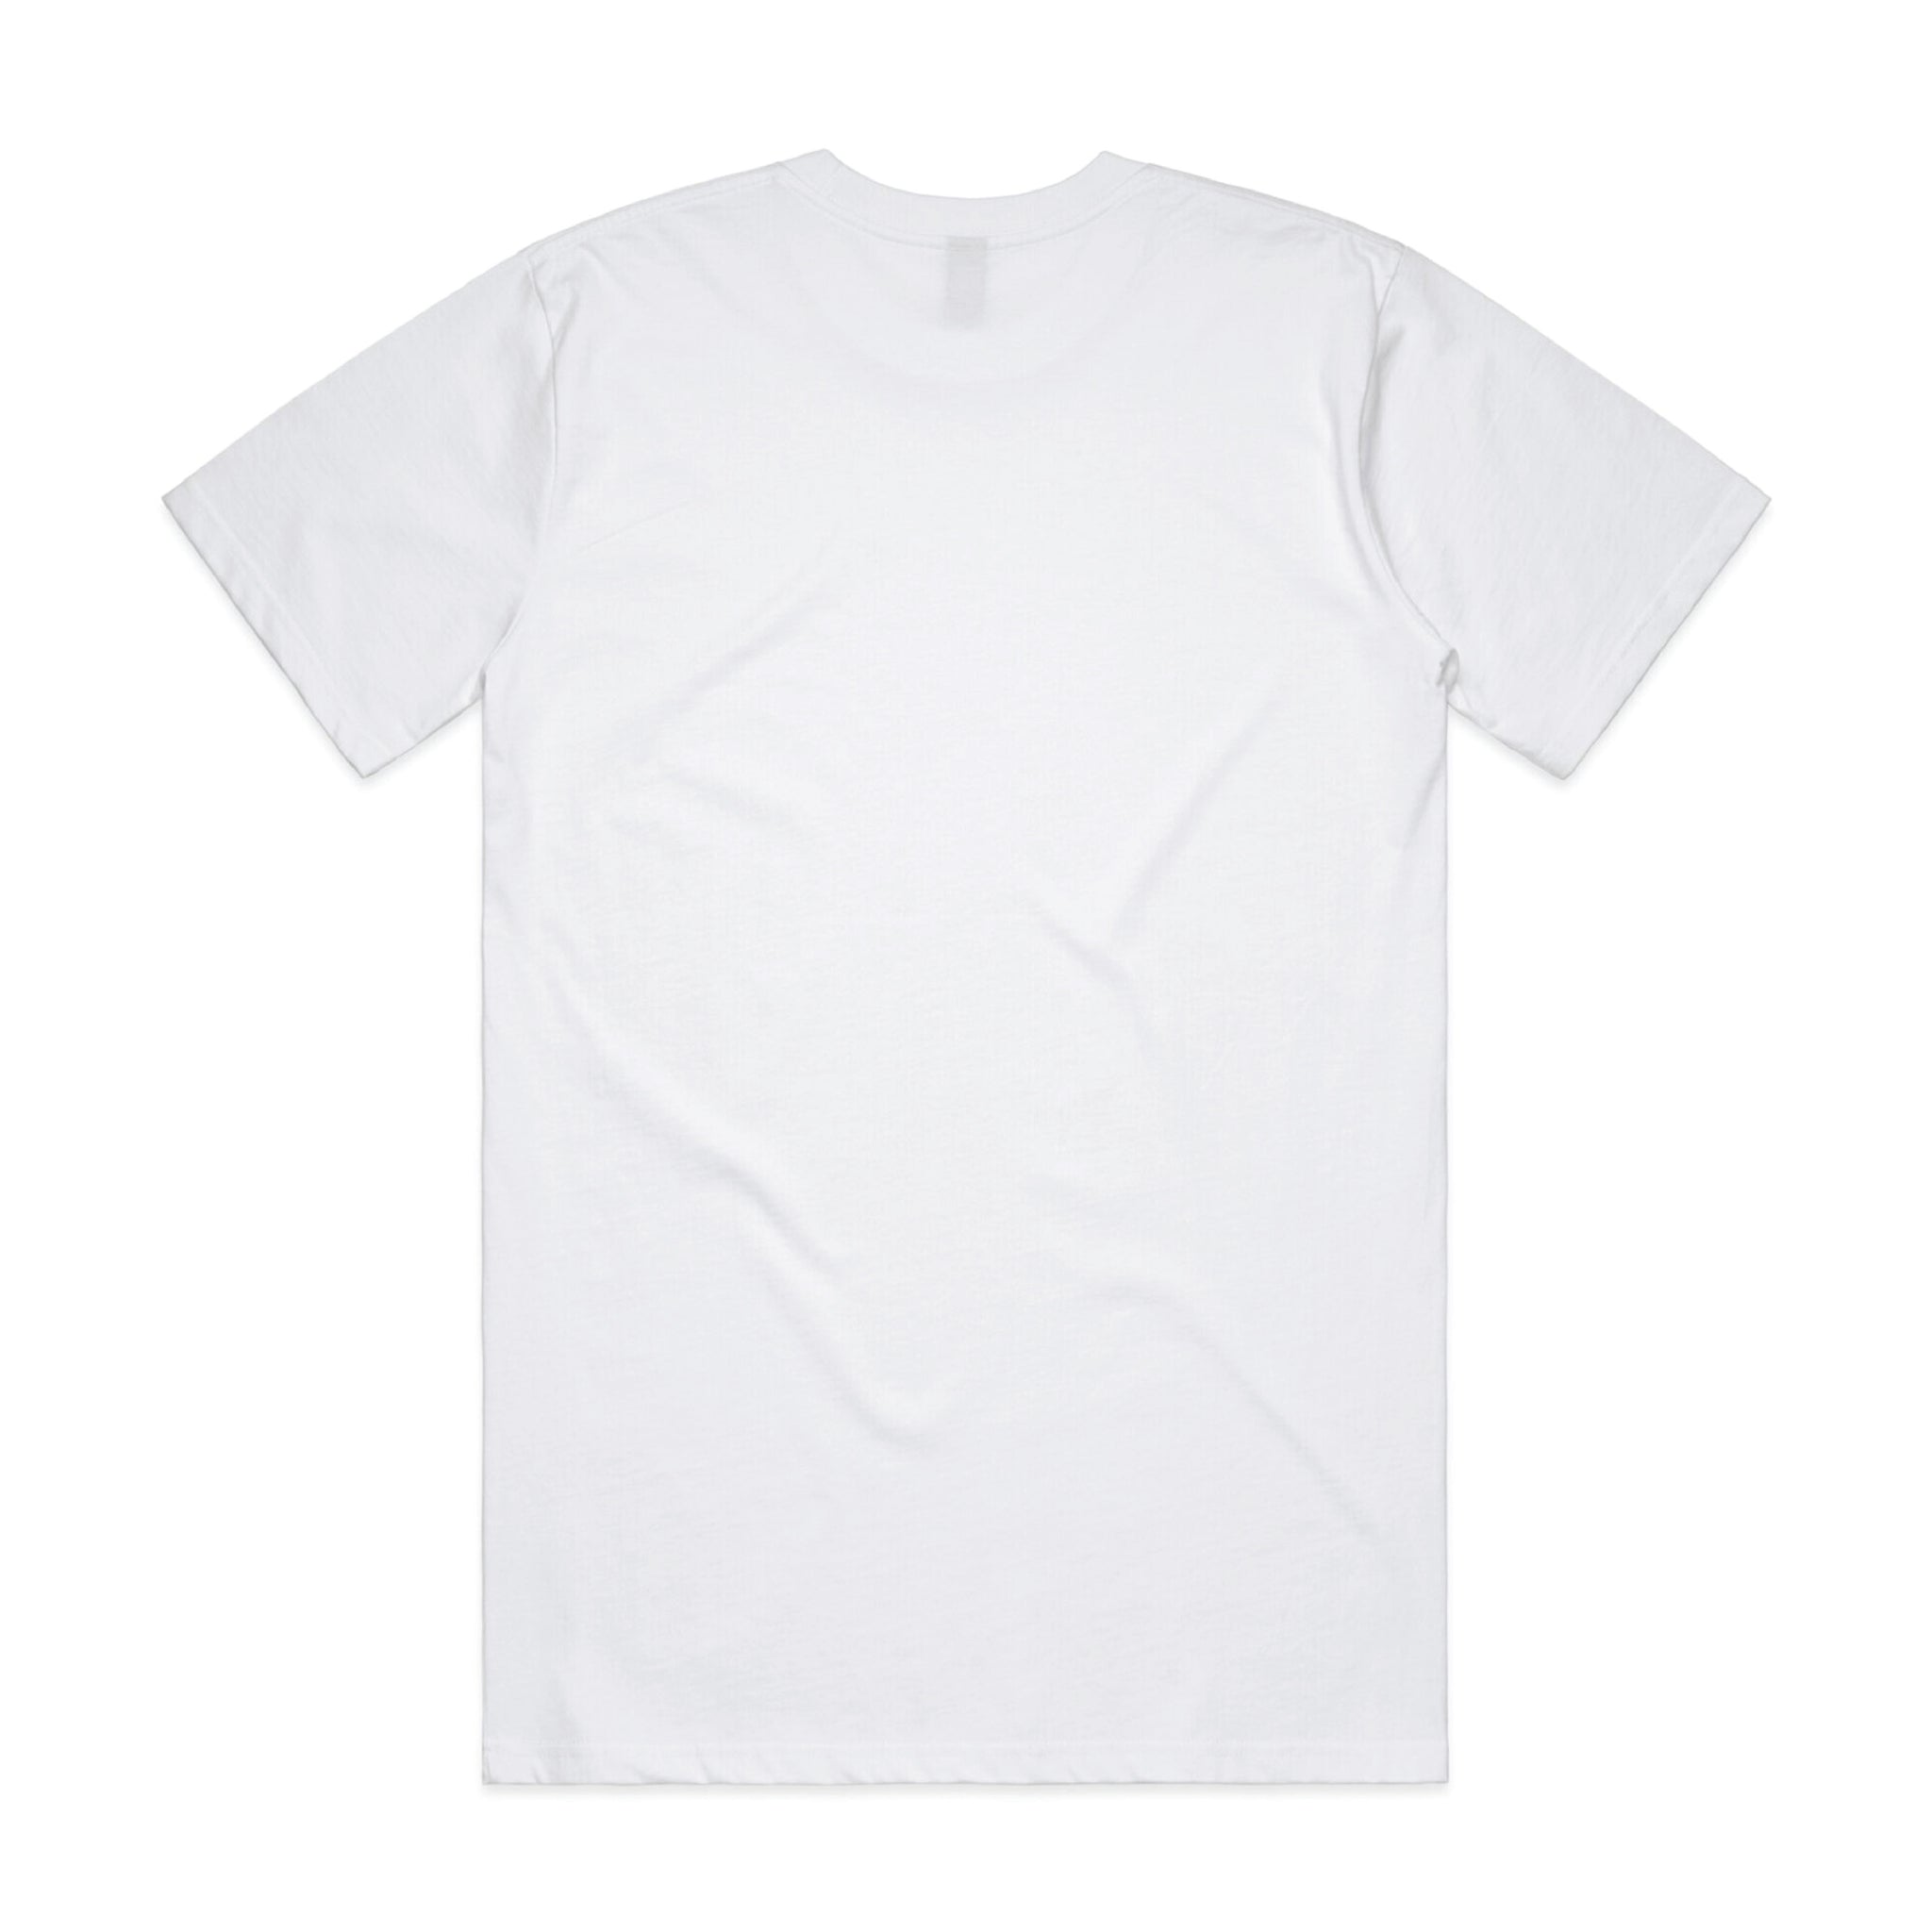 Tee Haliboy White – Classic Logo Diagonal